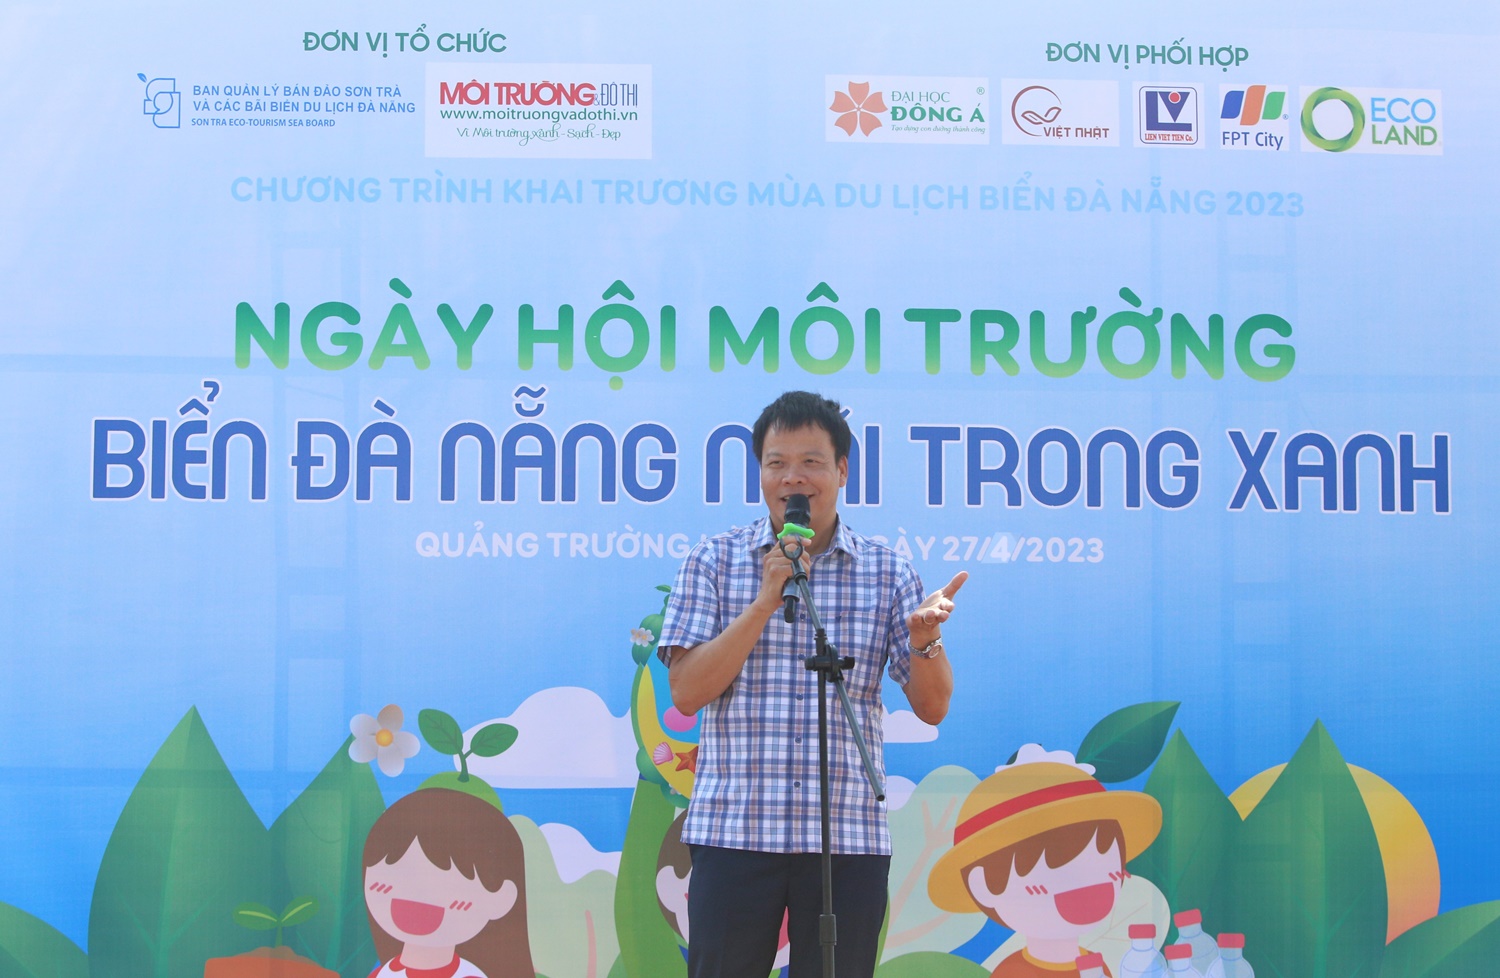 TS.LS Đồng Xuân Thụ, Tổng biên tập Tạp chí Môi trường và Đô thị Việt Nam phát biểu trong chương trình.